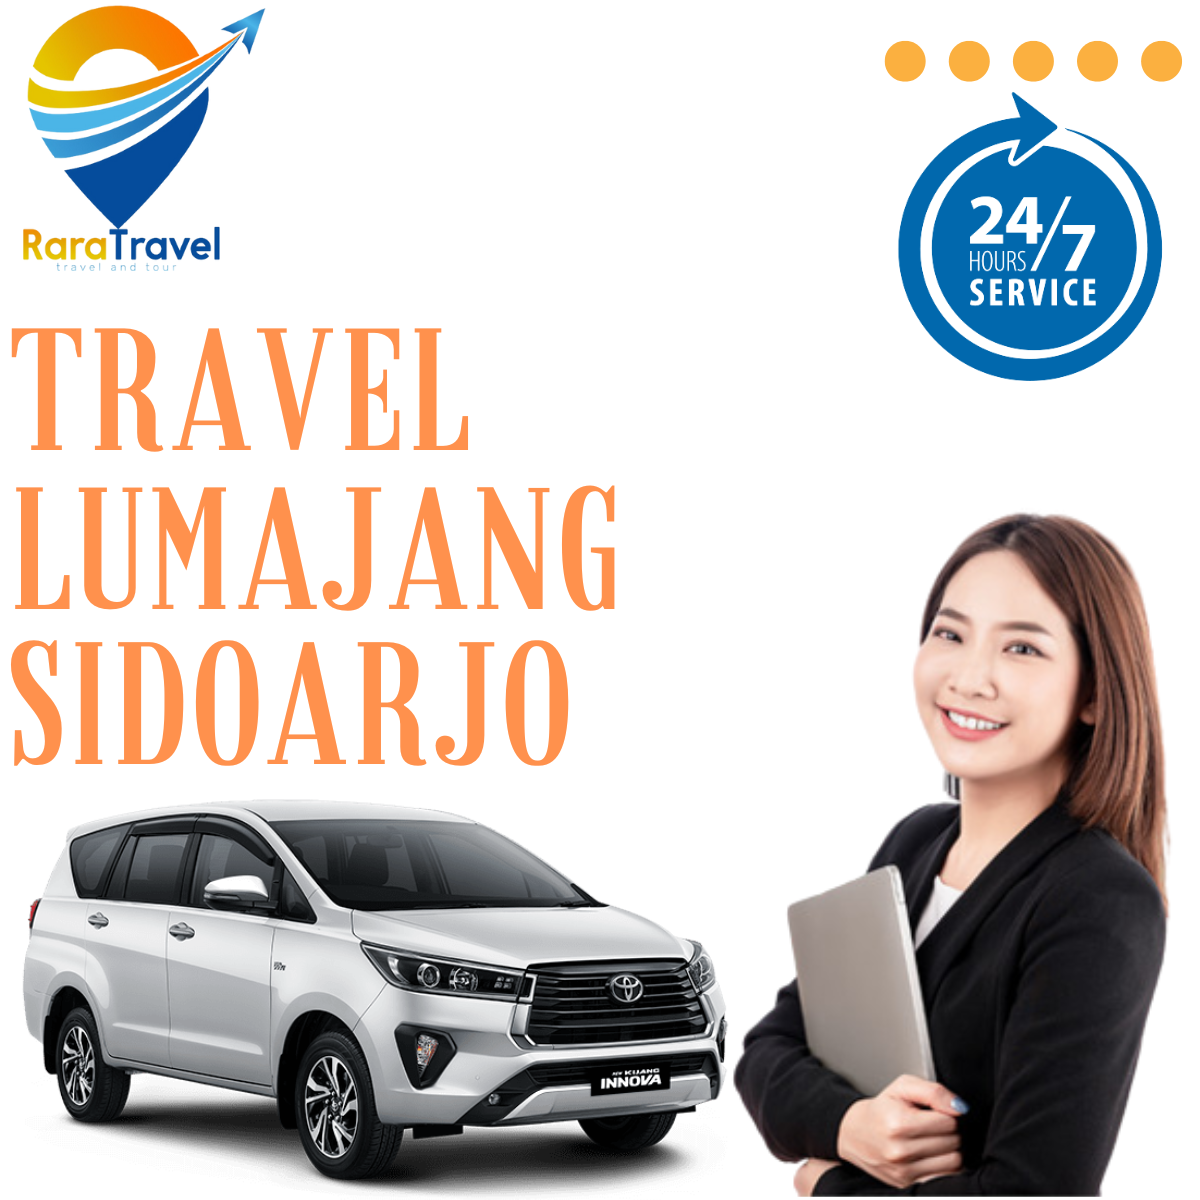 Travel Lumajang Sidoarjo PP, Harga Tiket Murah, Layanan 24 Jam